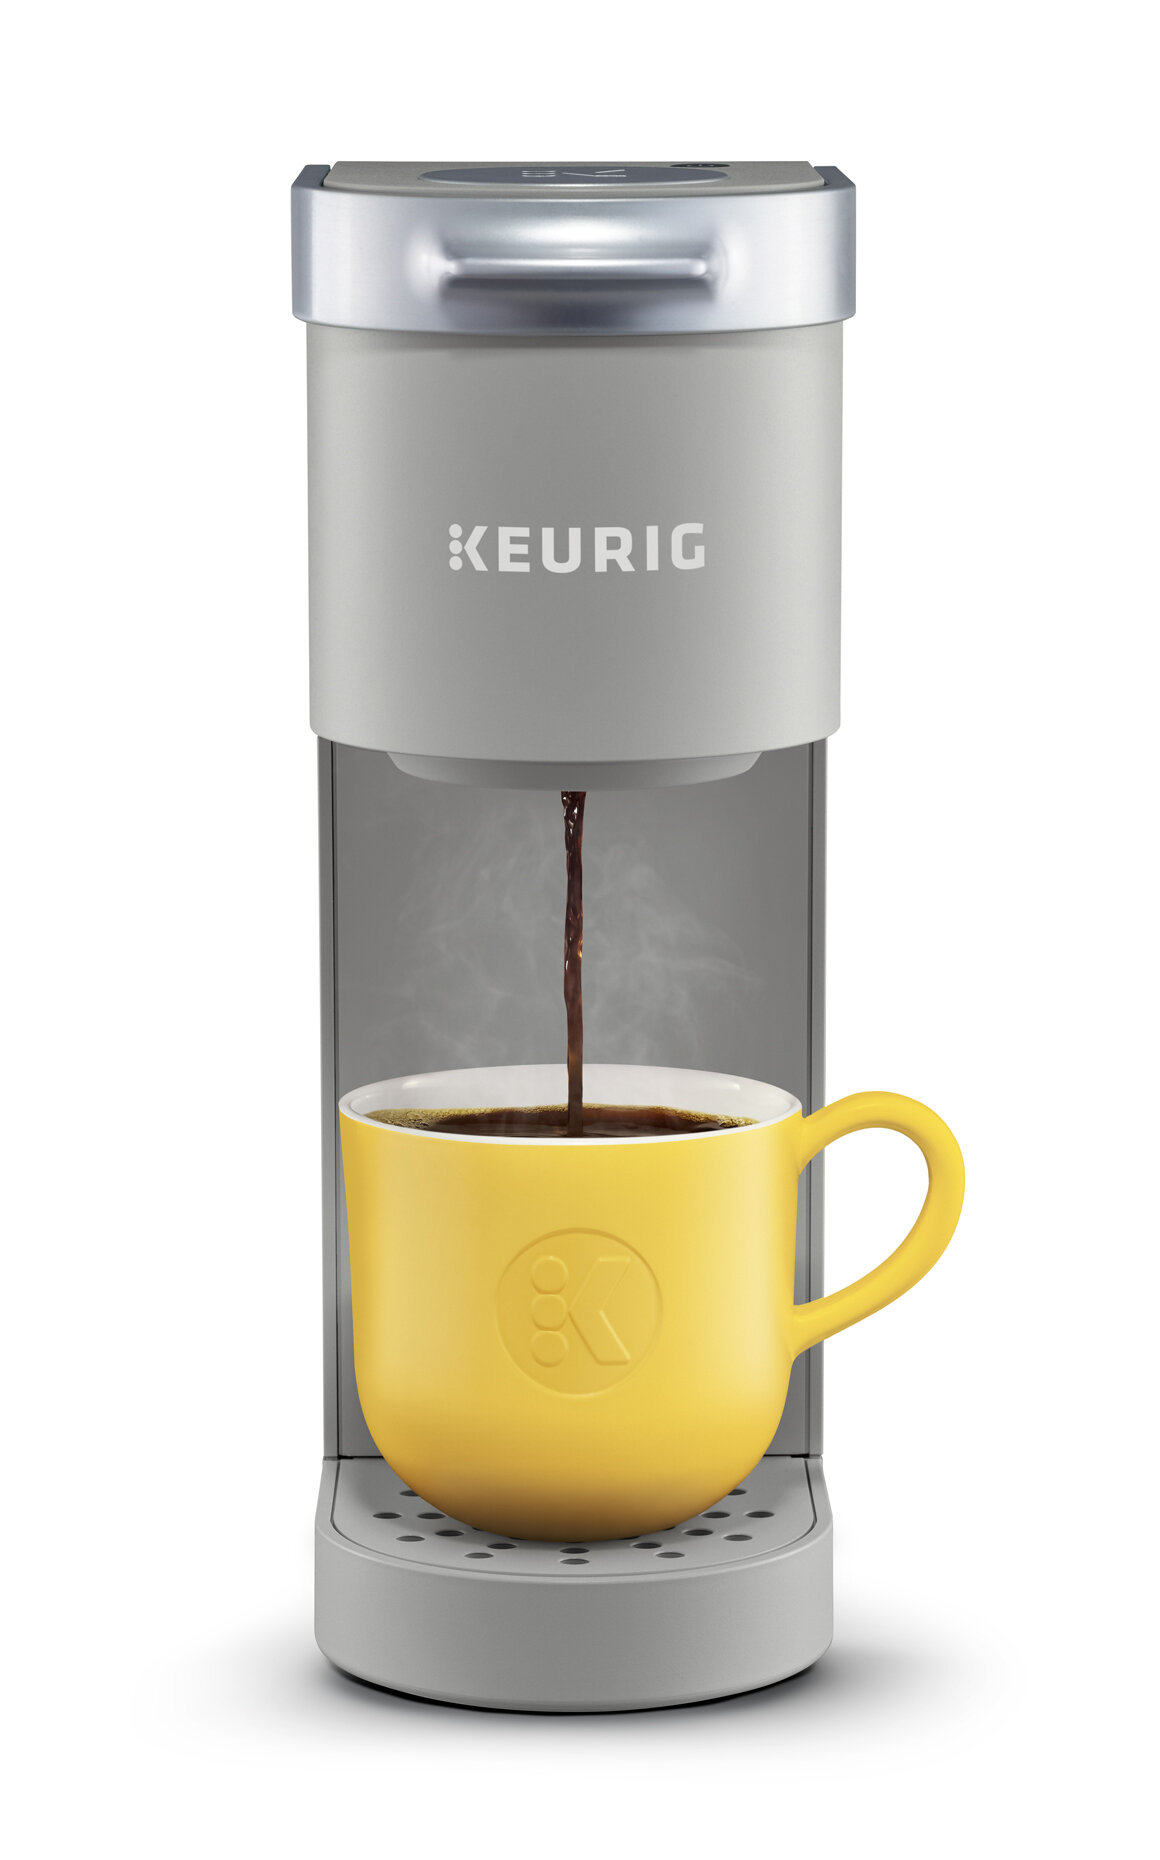 https://assets.wfcdn.com/im/34750111/compr-r85/7214/72146470/keurig-k-mini-single-serve-k-cup-pod-coffee-maker.jpg